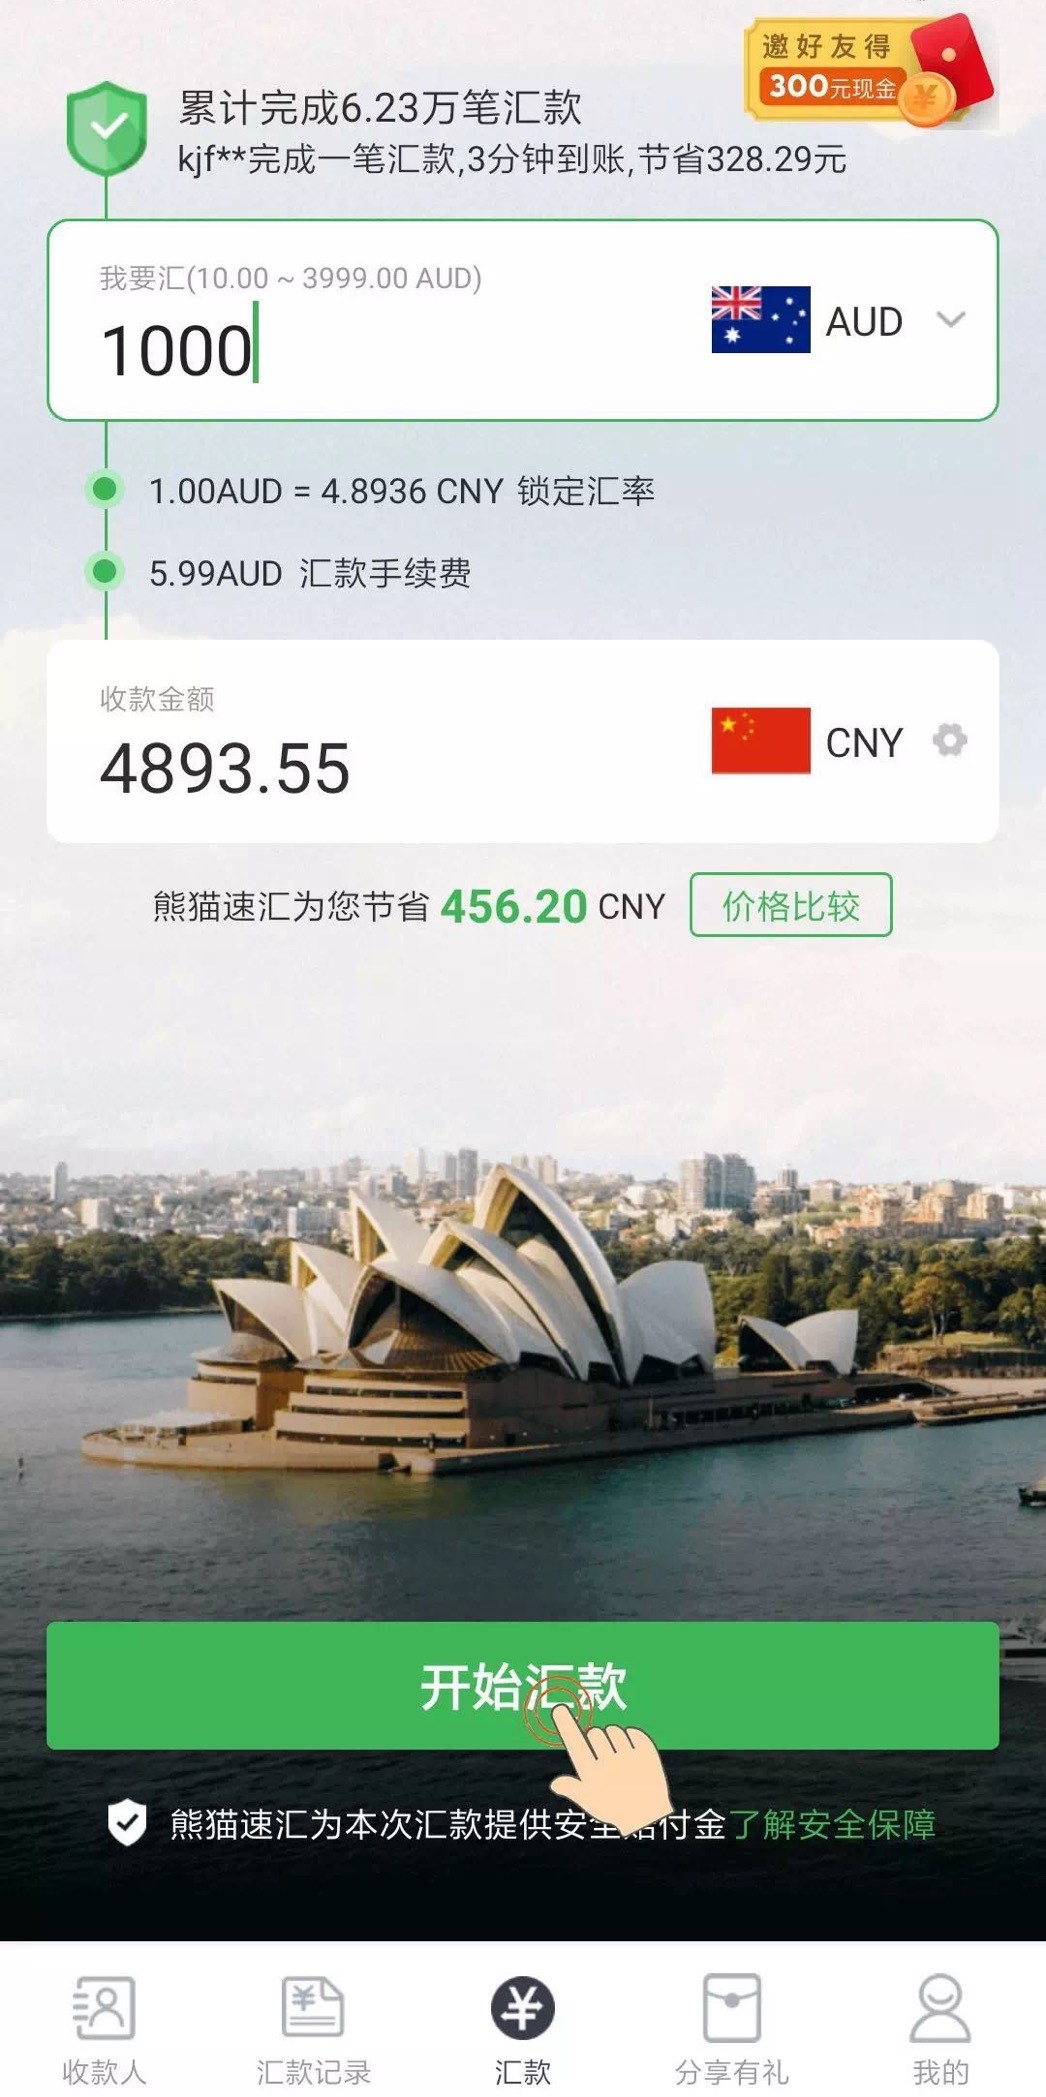 【澳洲快汇中国】如何从澳洲快汇回中国 - 熊猫速汇app首页｜熊猫速汇 PandaRemit